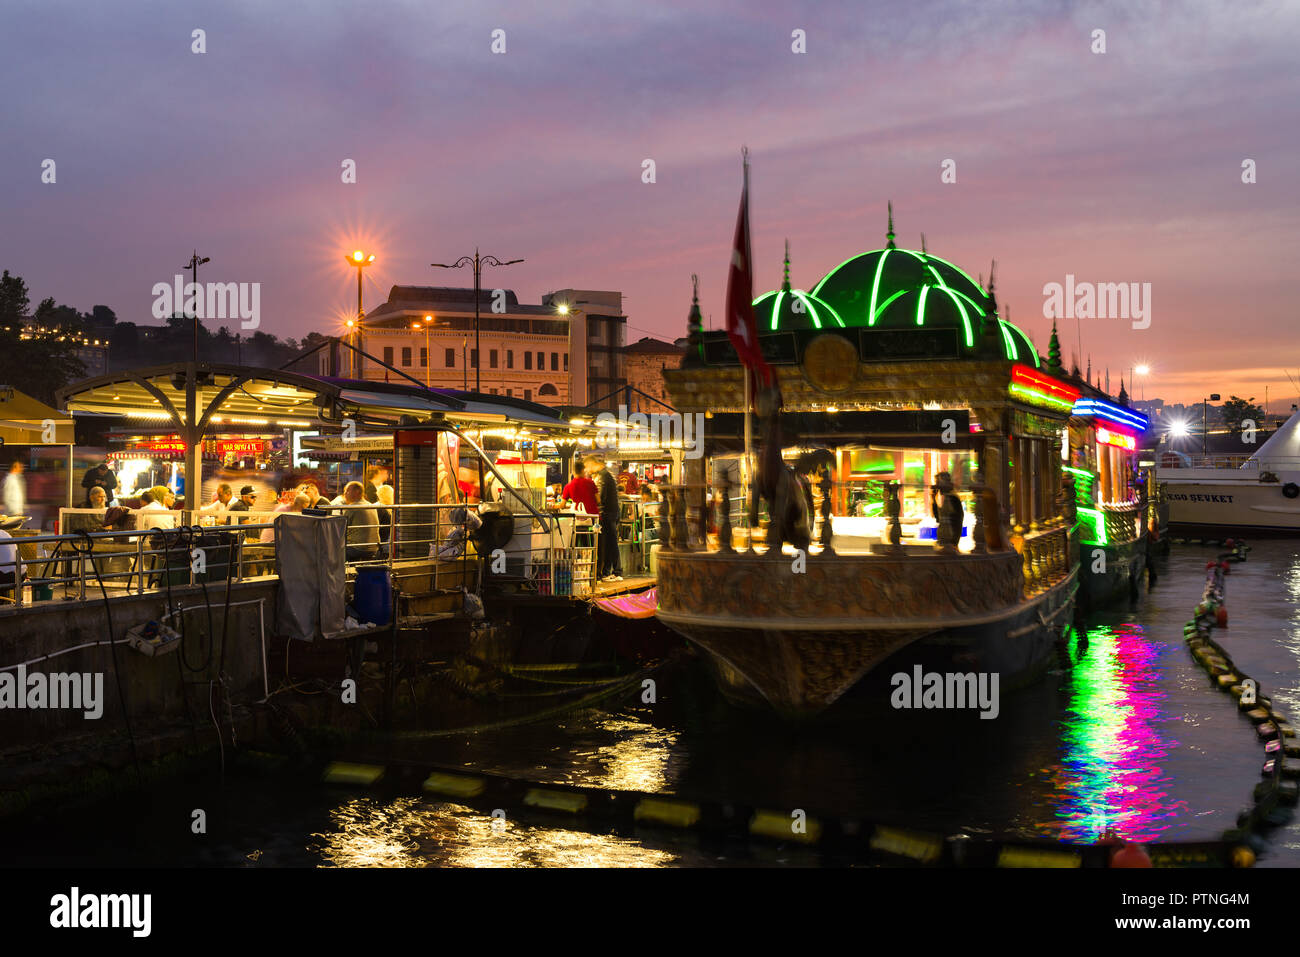 Il floating cucine di Eminonu bazaar accesa fino al crepuscolo con persone sedute in zona pranzo, Istanbul, Turchia Foto Stock